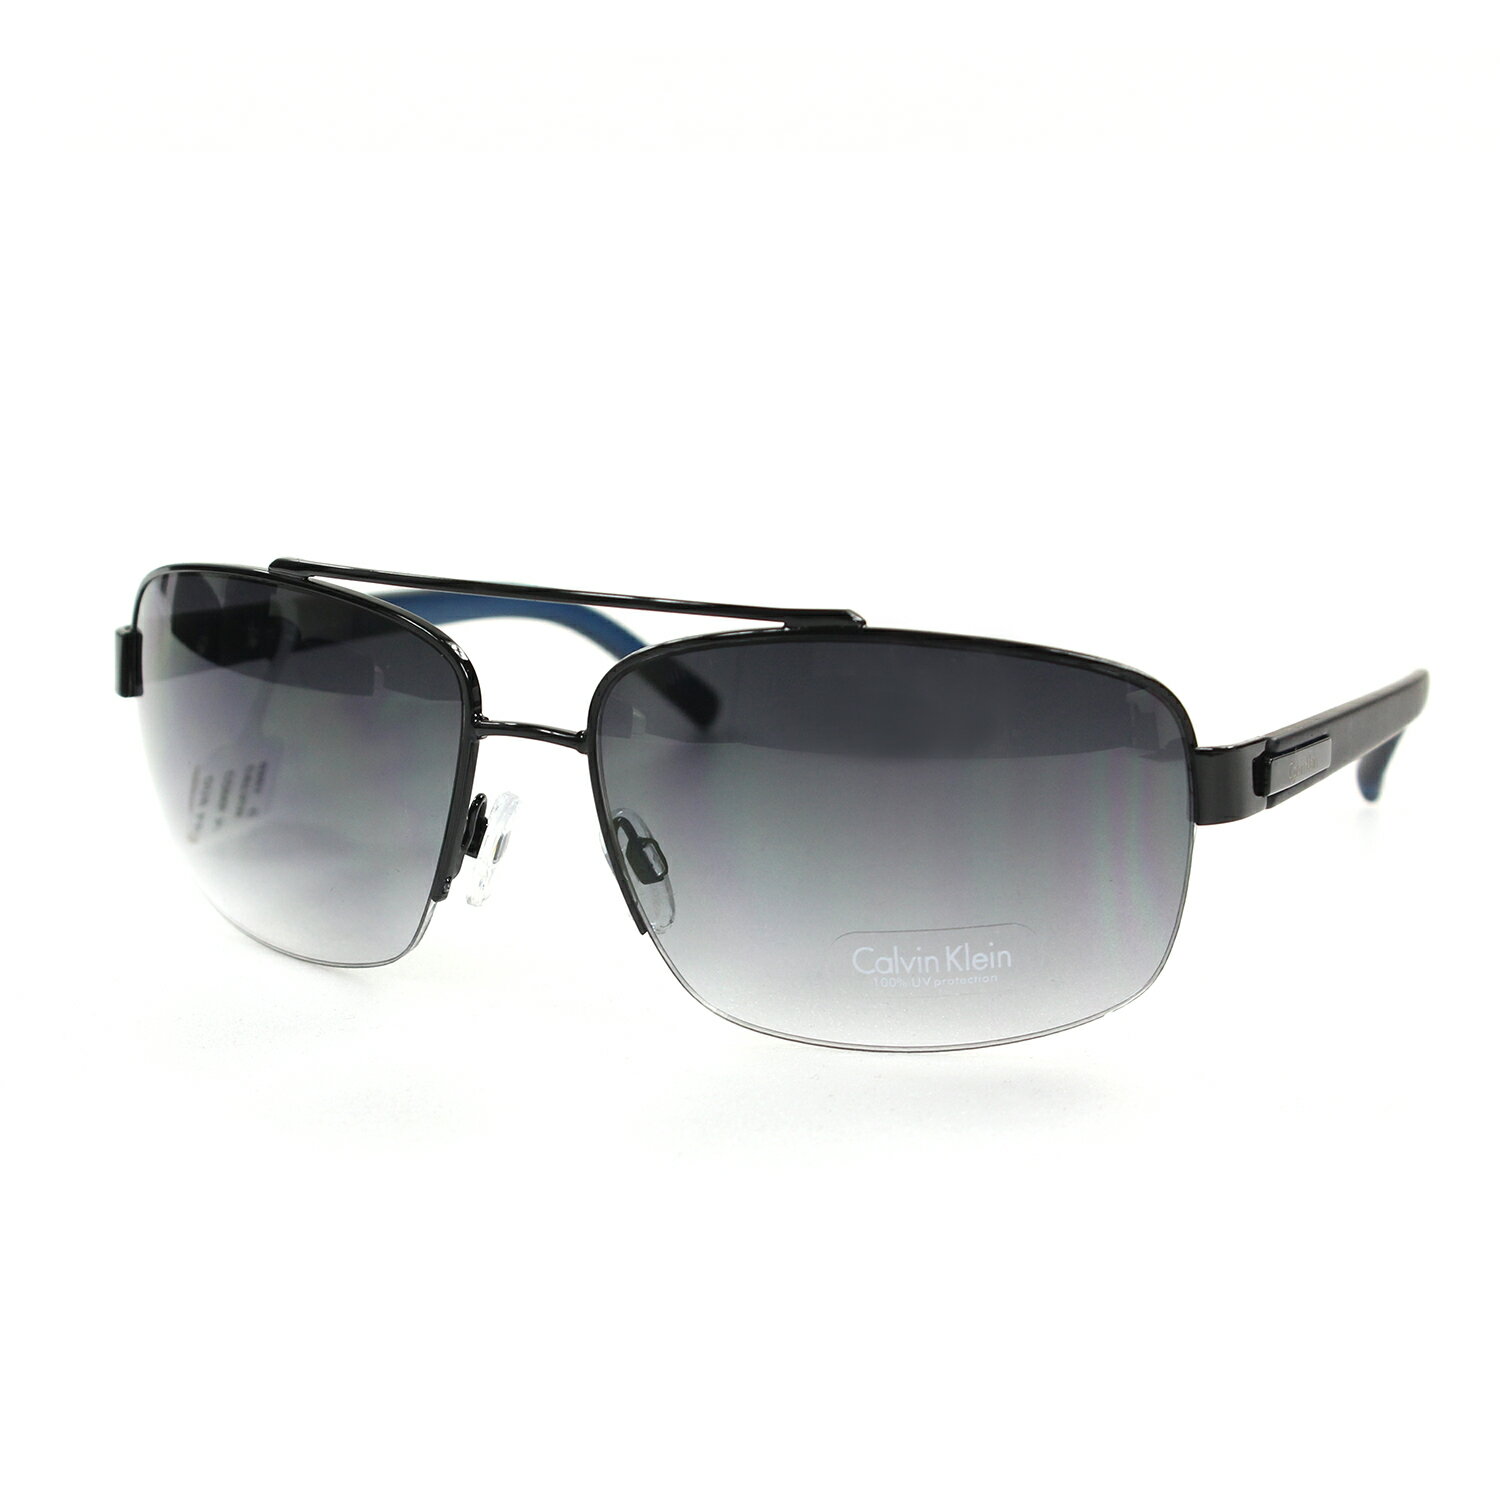 美國百分百【全新真品】Calvin Klein 太陽眼鏡 CK 墨鏡 配件 眼鏡 抗UV 騎士 黑灰 藍鏡腳 F067